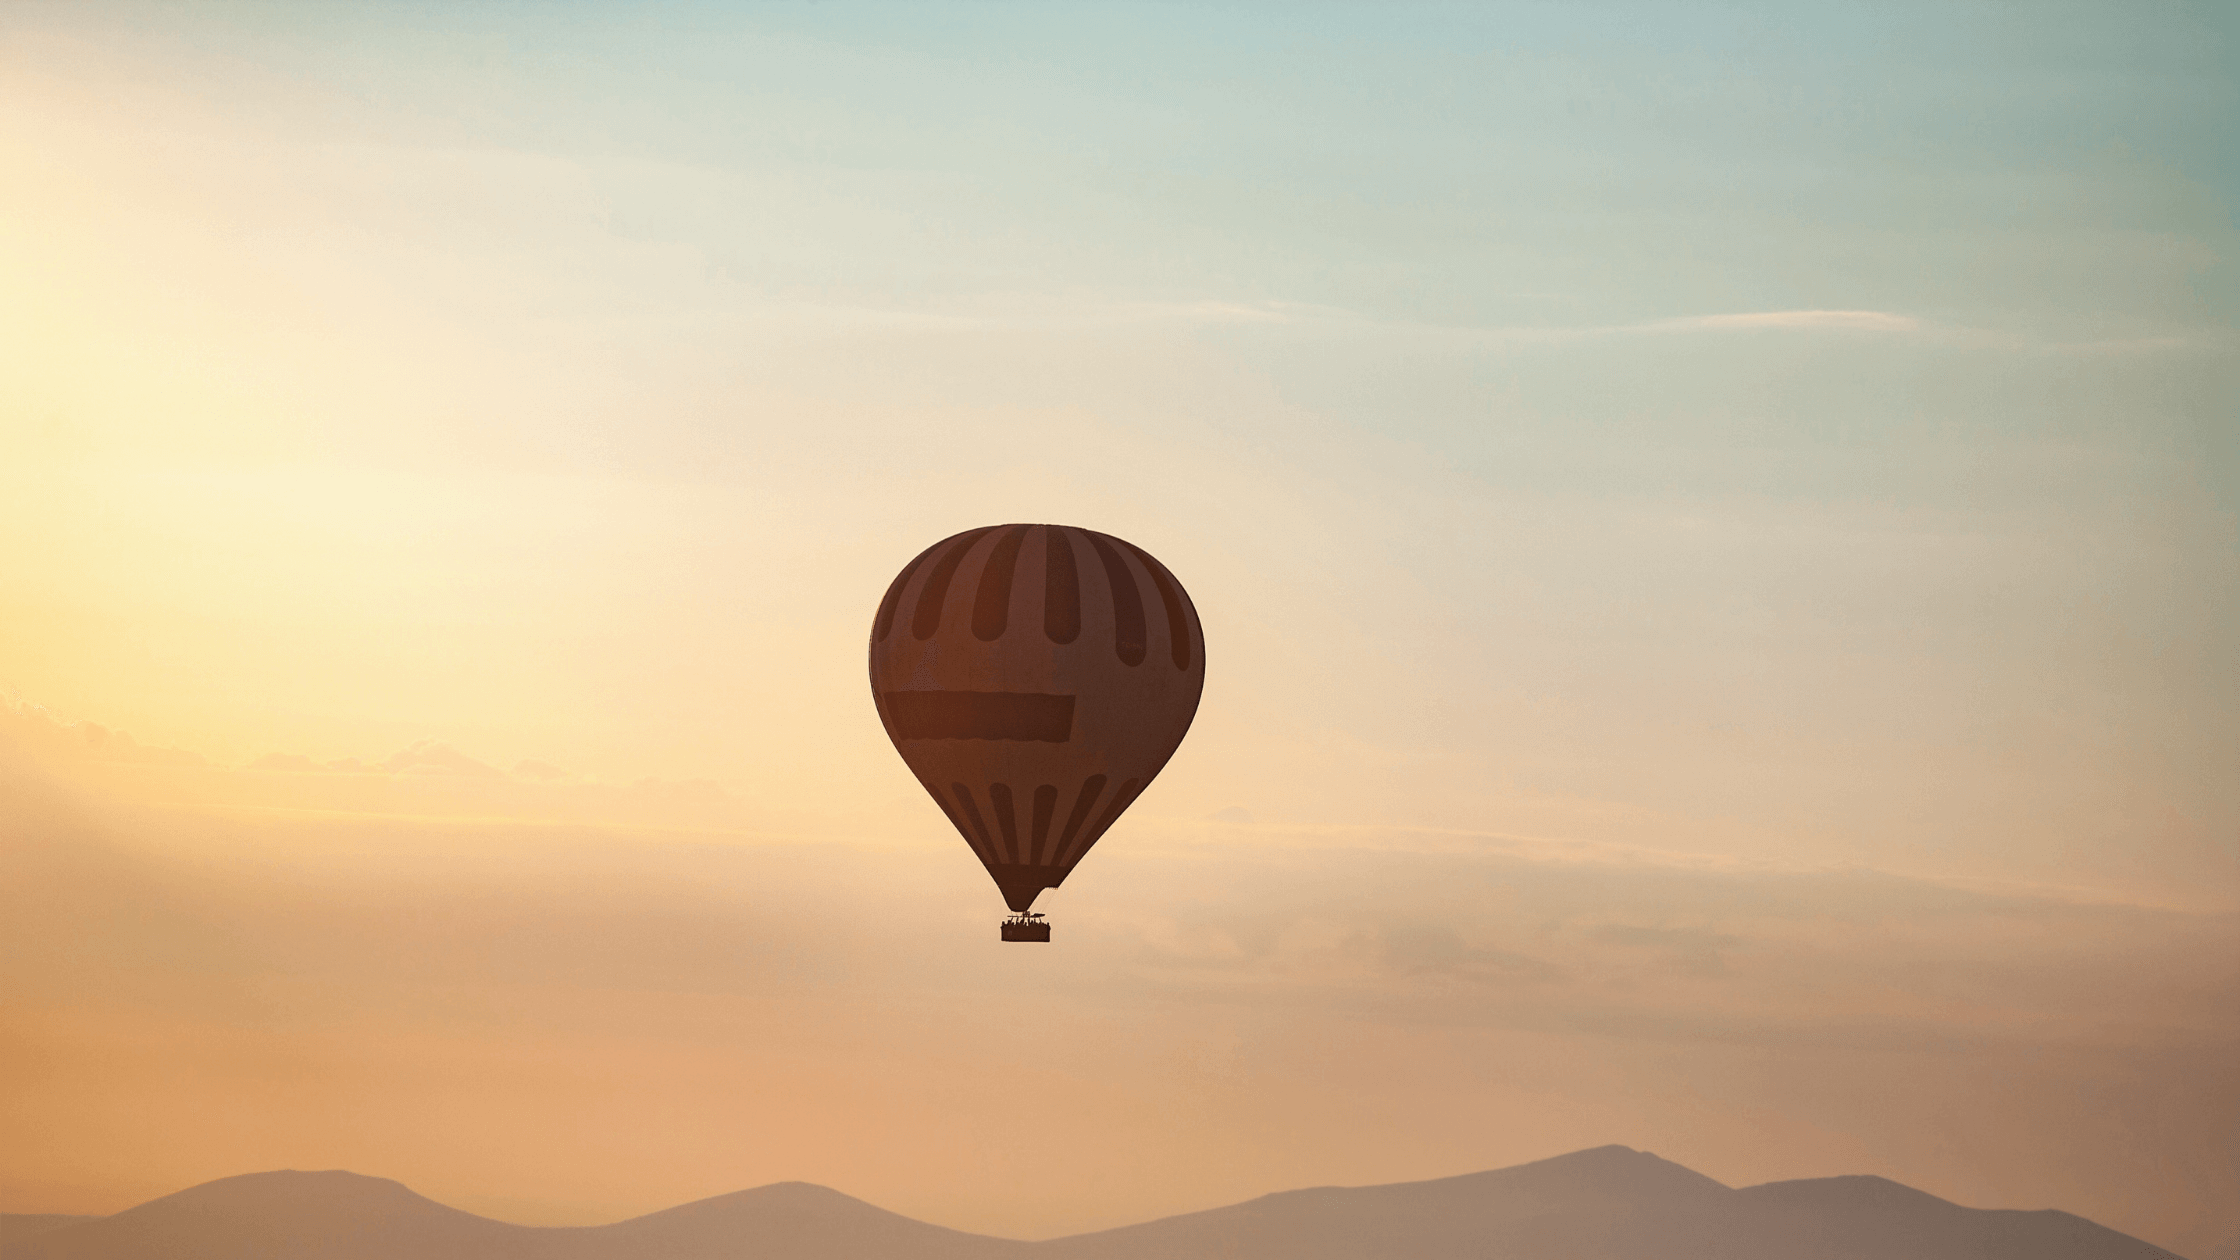 Sunrise Balloon Flight Experience